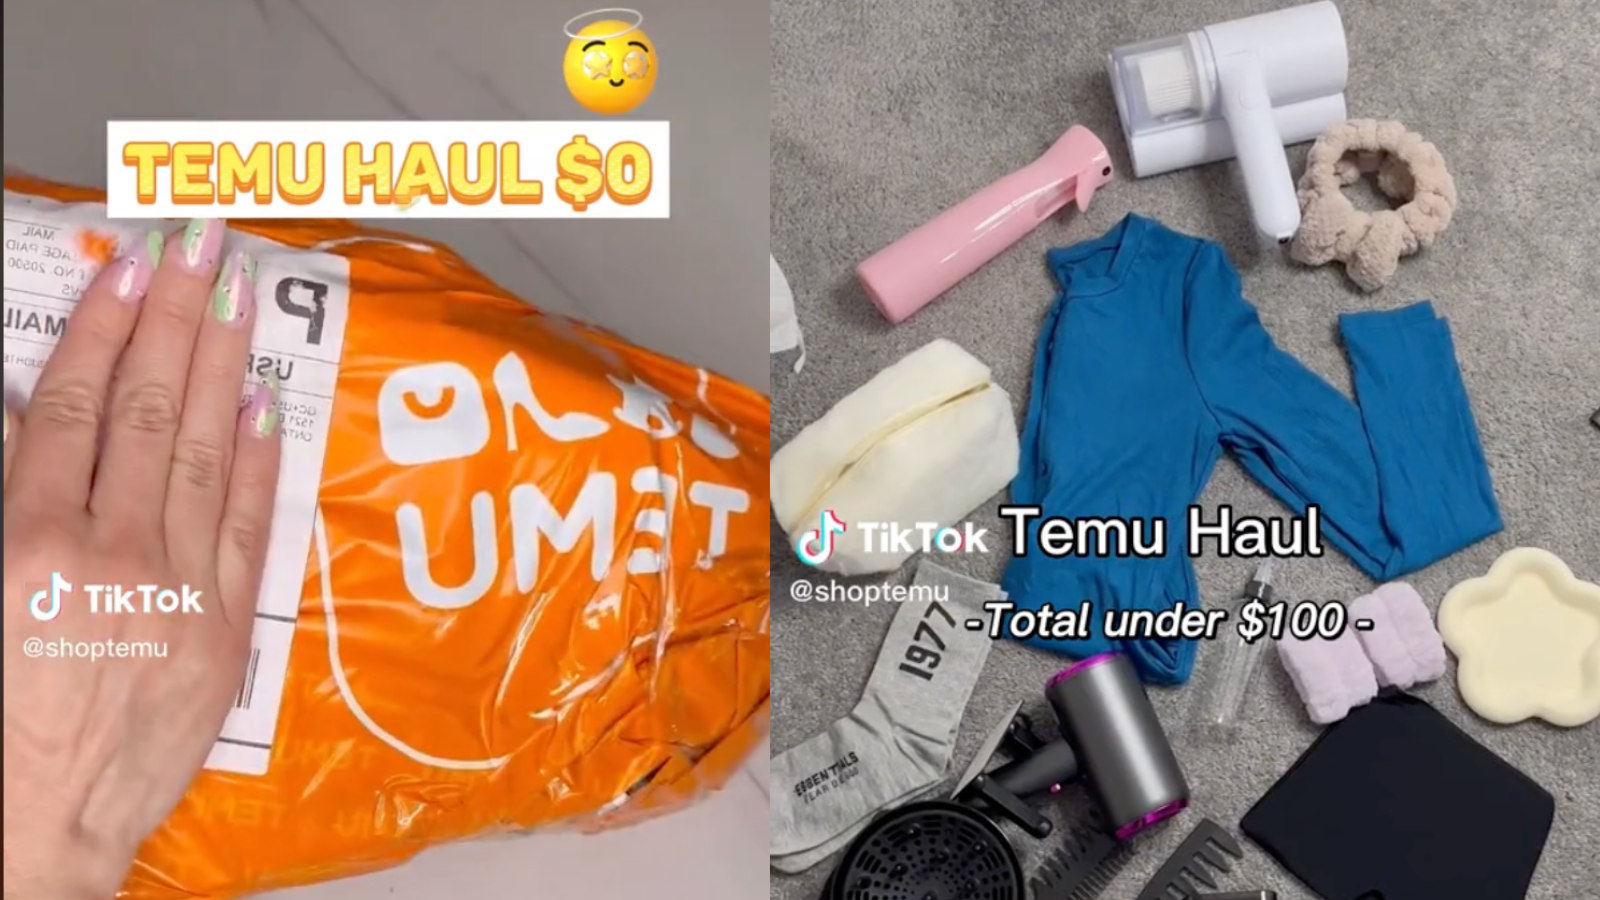 TEMU HAUL, What Men Buy From Temu